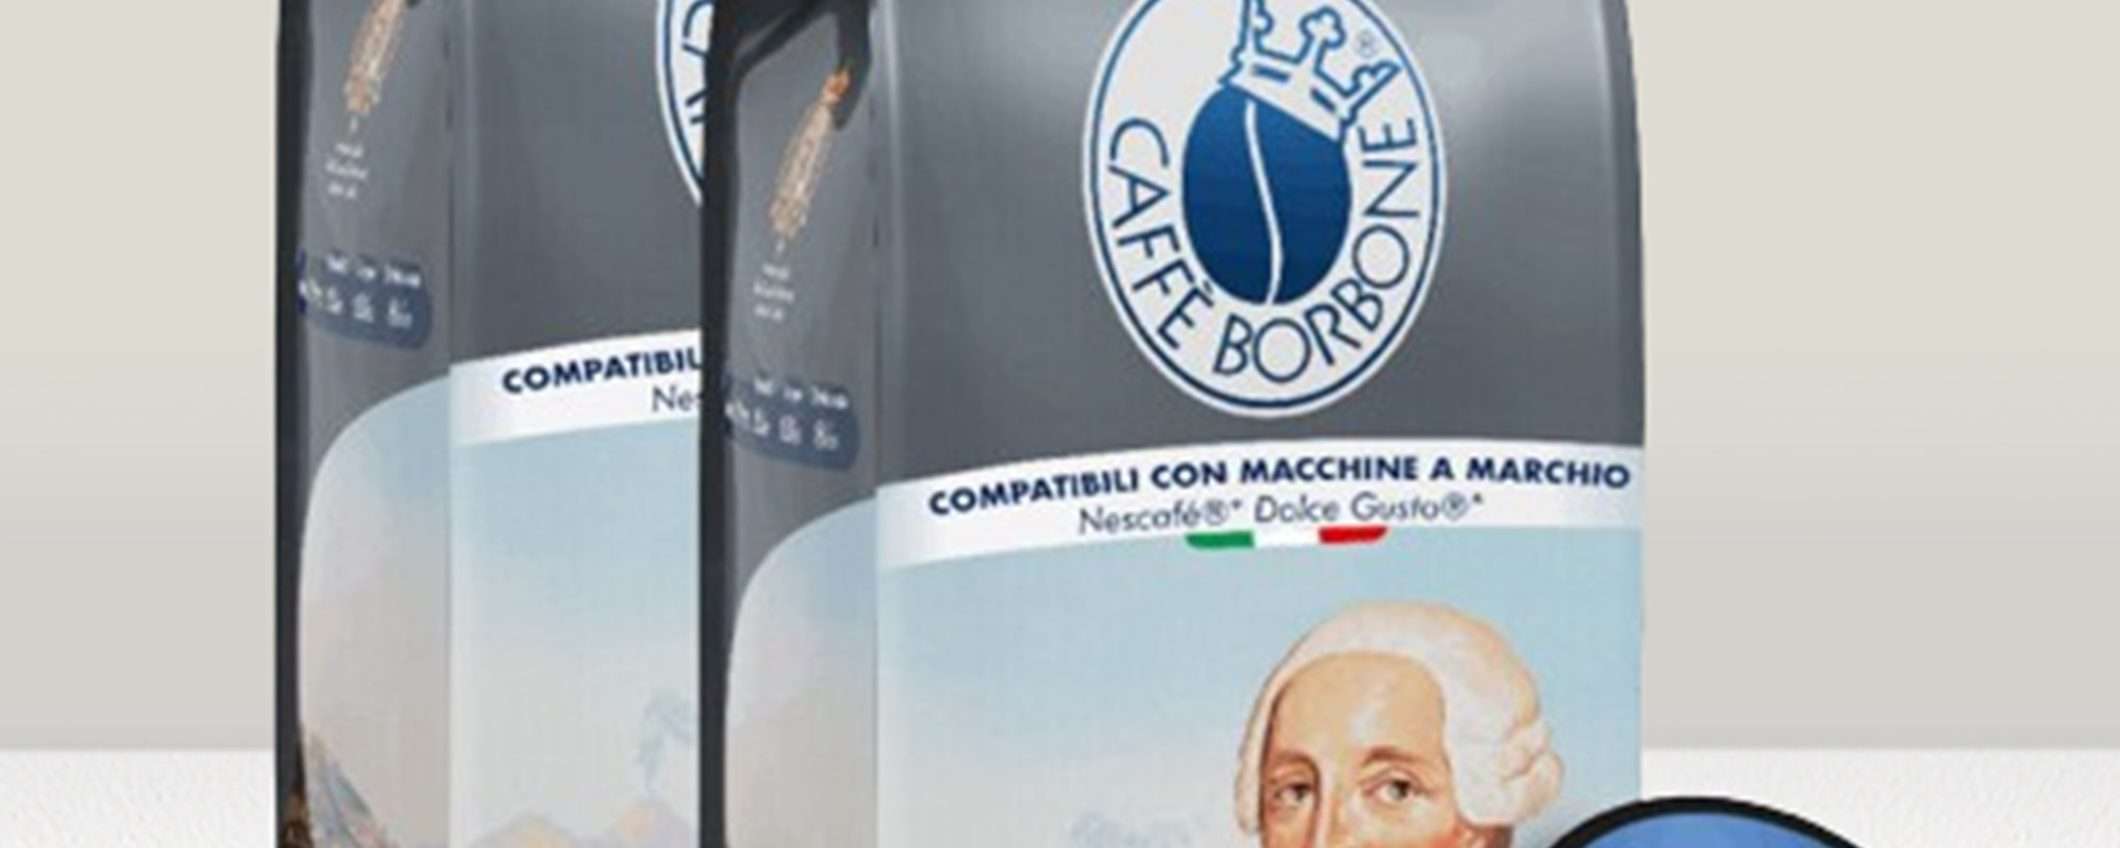 180 capsule Caffè Borbone per Dolce Gusto Nescafé scontate del 50%: FOLLIA di eBay